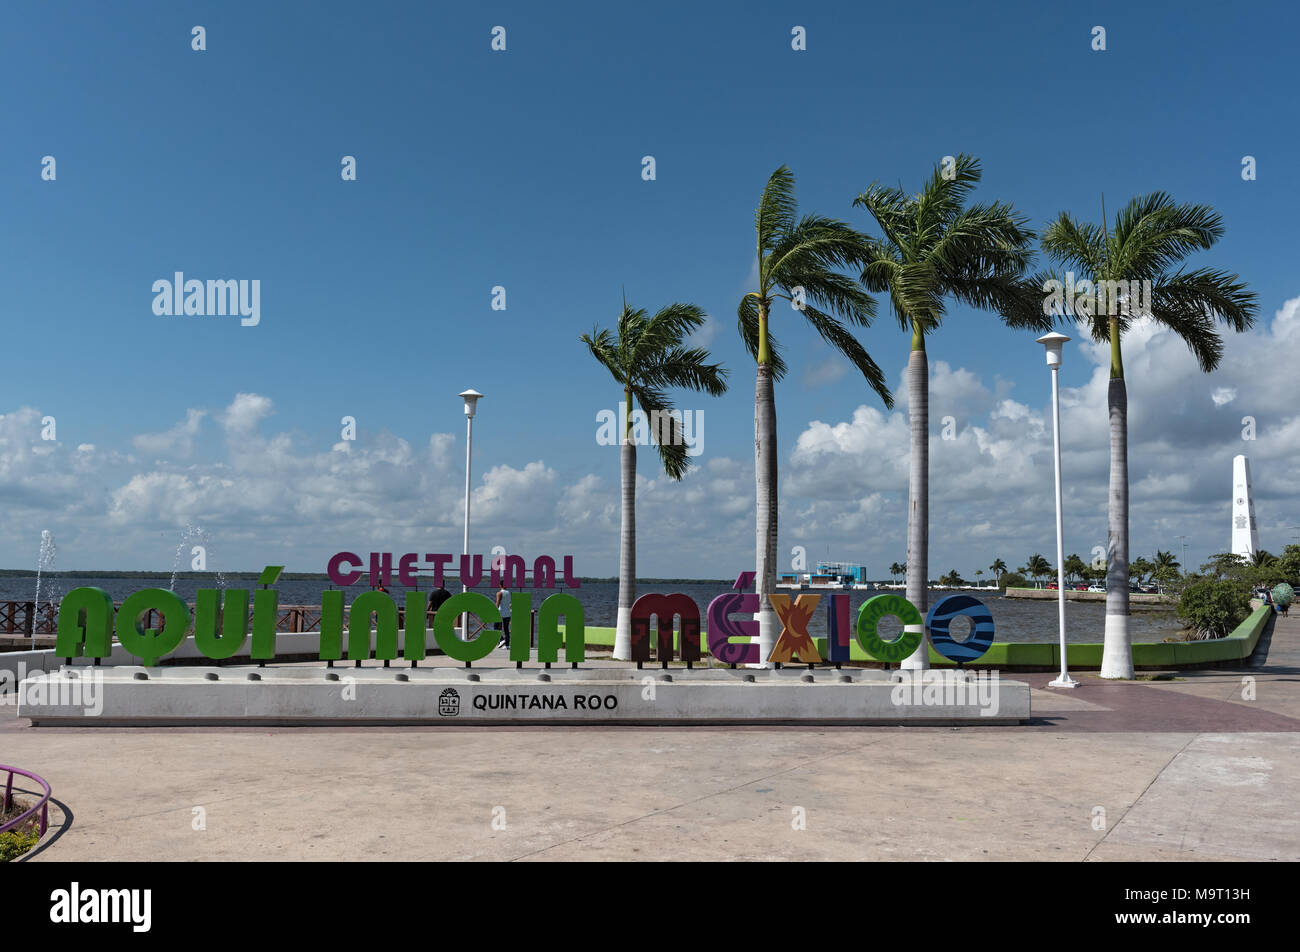 Les lettres colorées de la ville mexicaine de Chetumal, Quintana Roo Banque D'Images